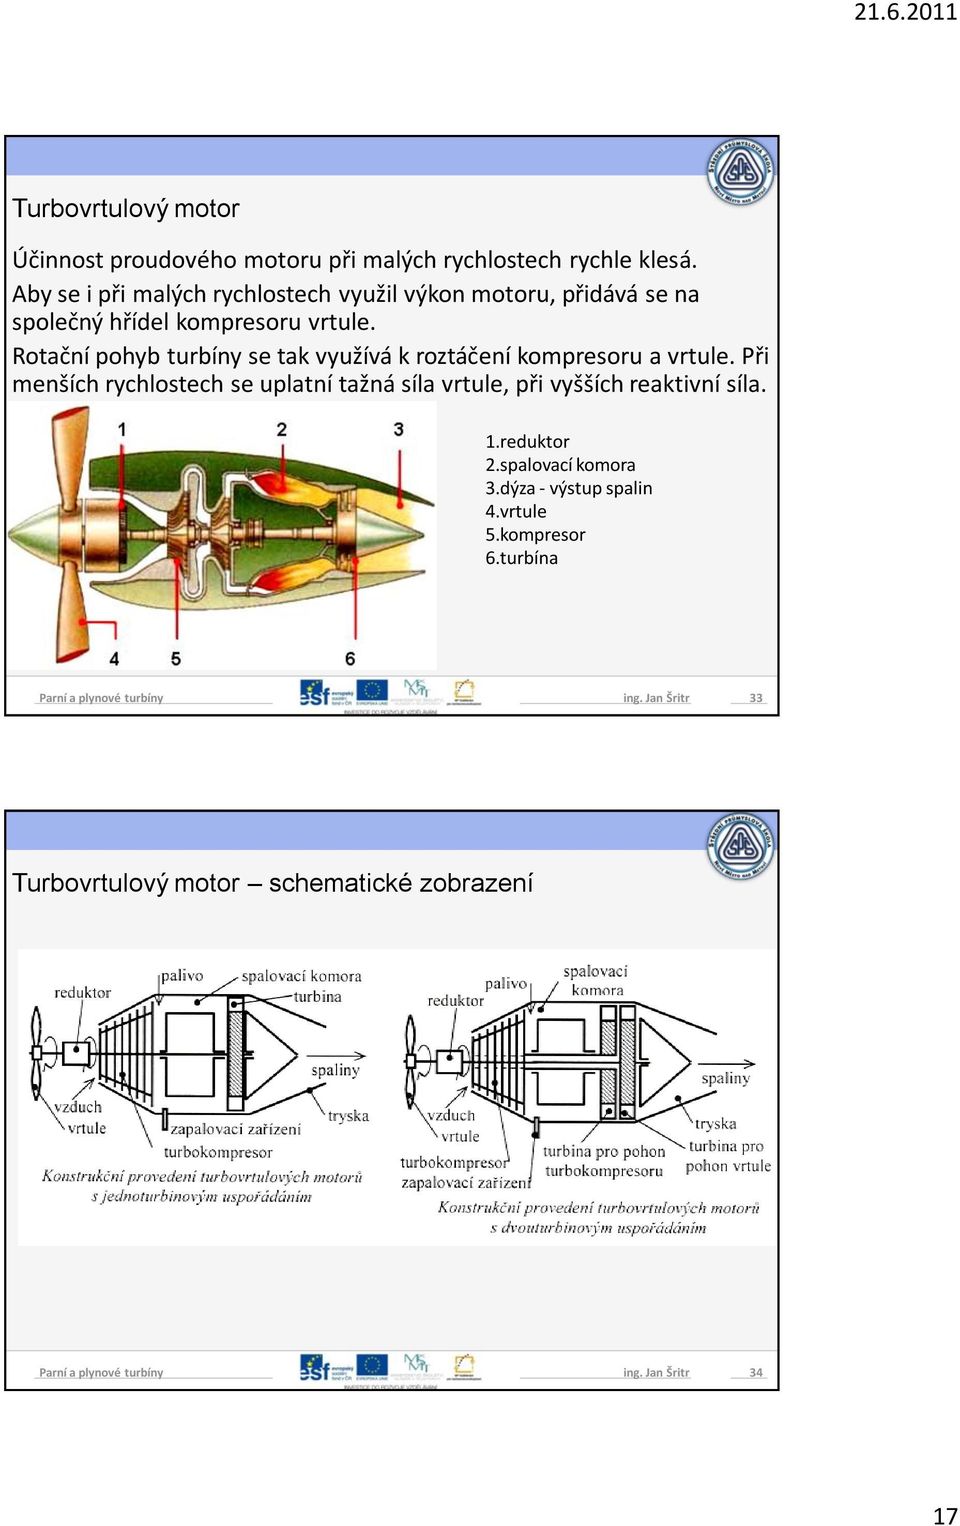 Rotační pohyb turbíny se tak využívá k roztáčení kompresoru a vrtule.